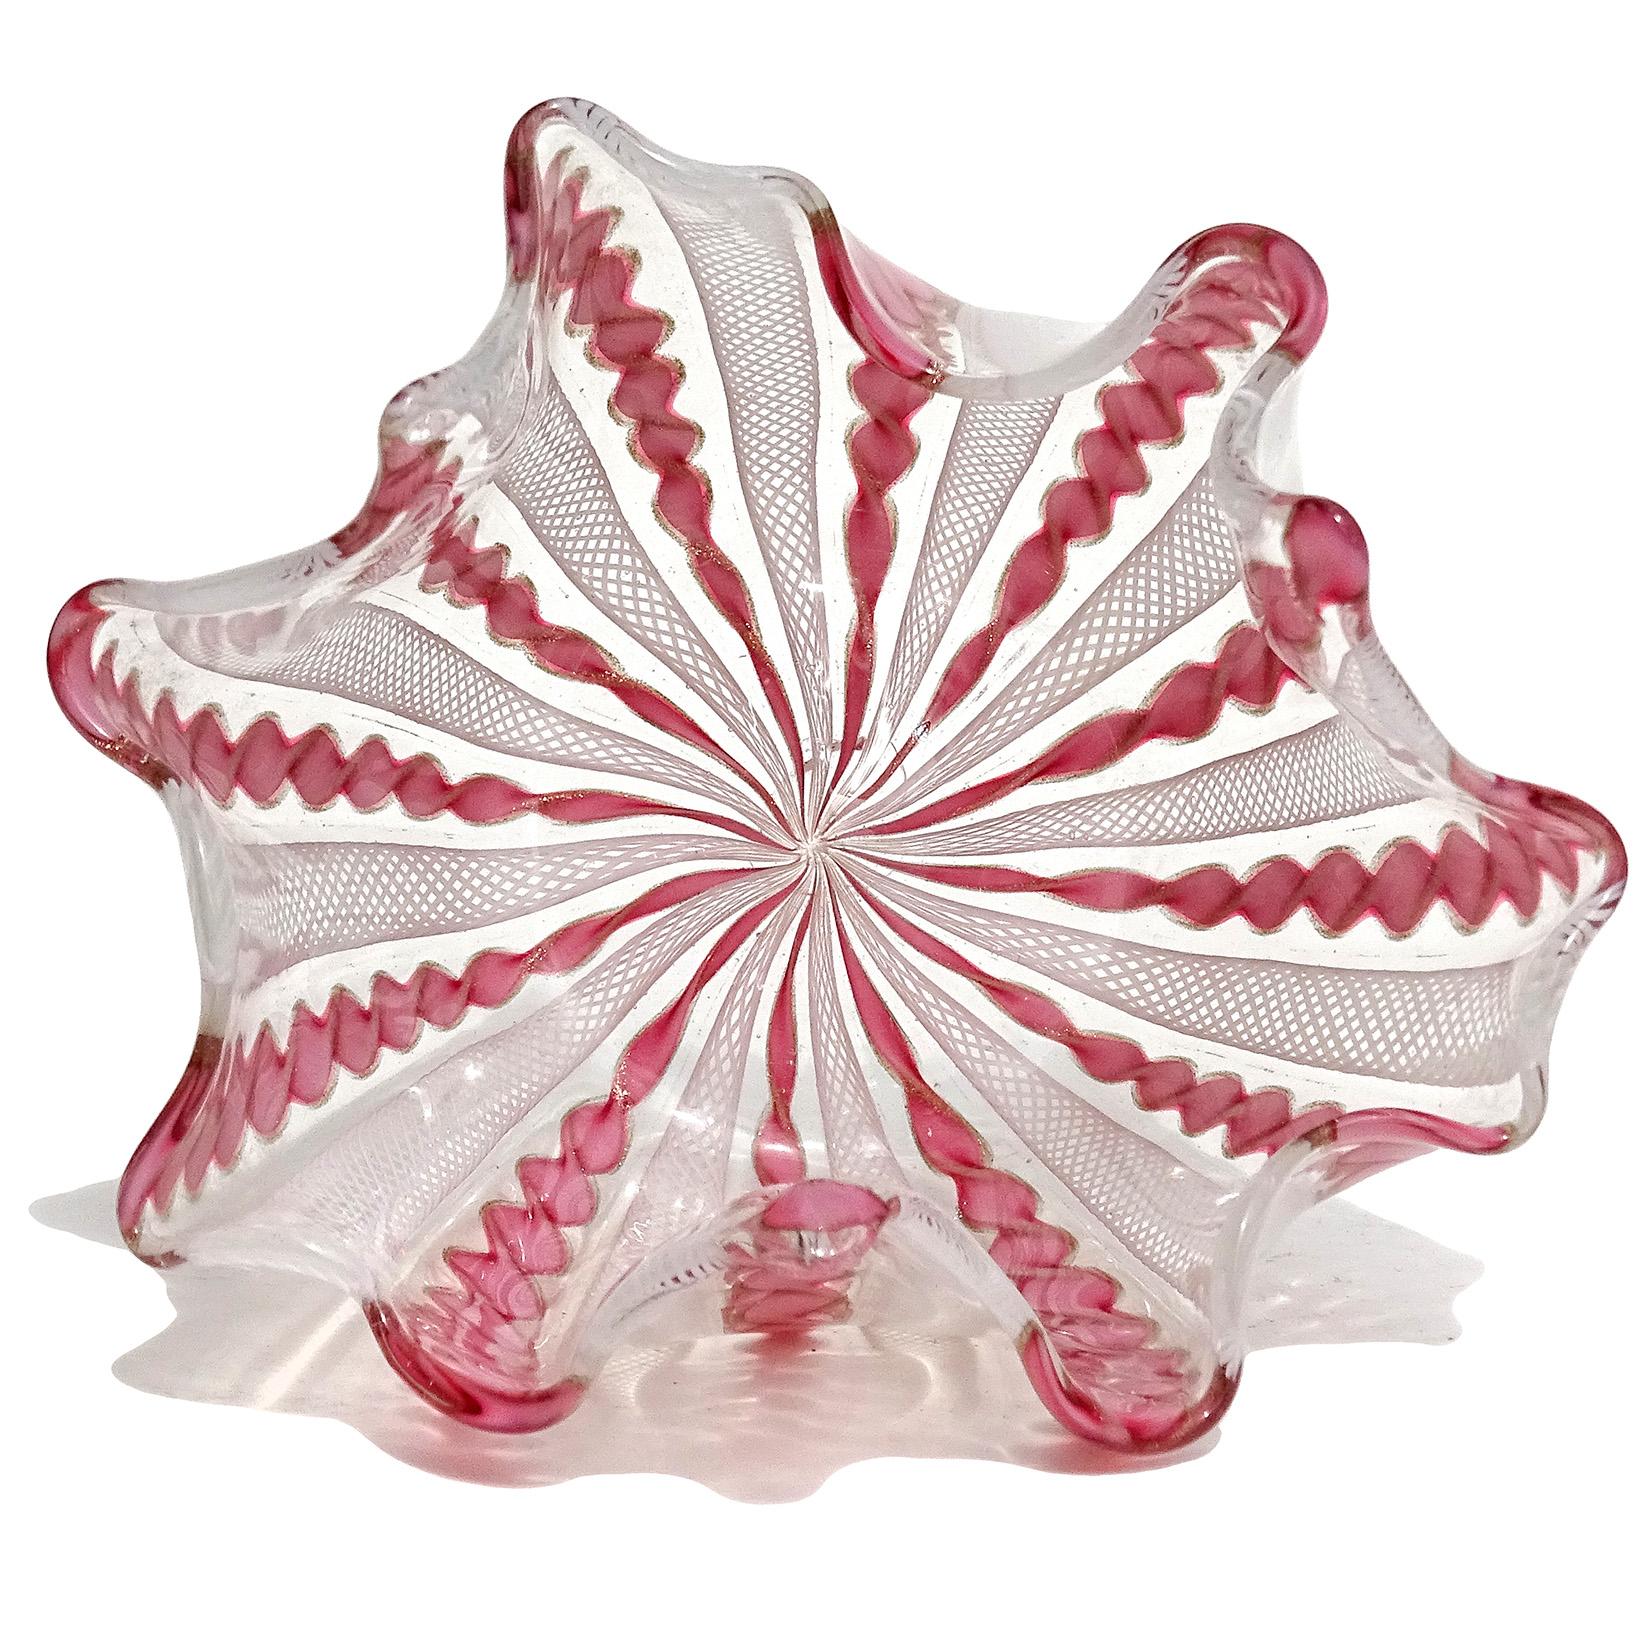 Fait main Vase Fazzoletto en verre d'art italien de Murano rose, blanc, mouchetures d'aventurine et rubans en vente